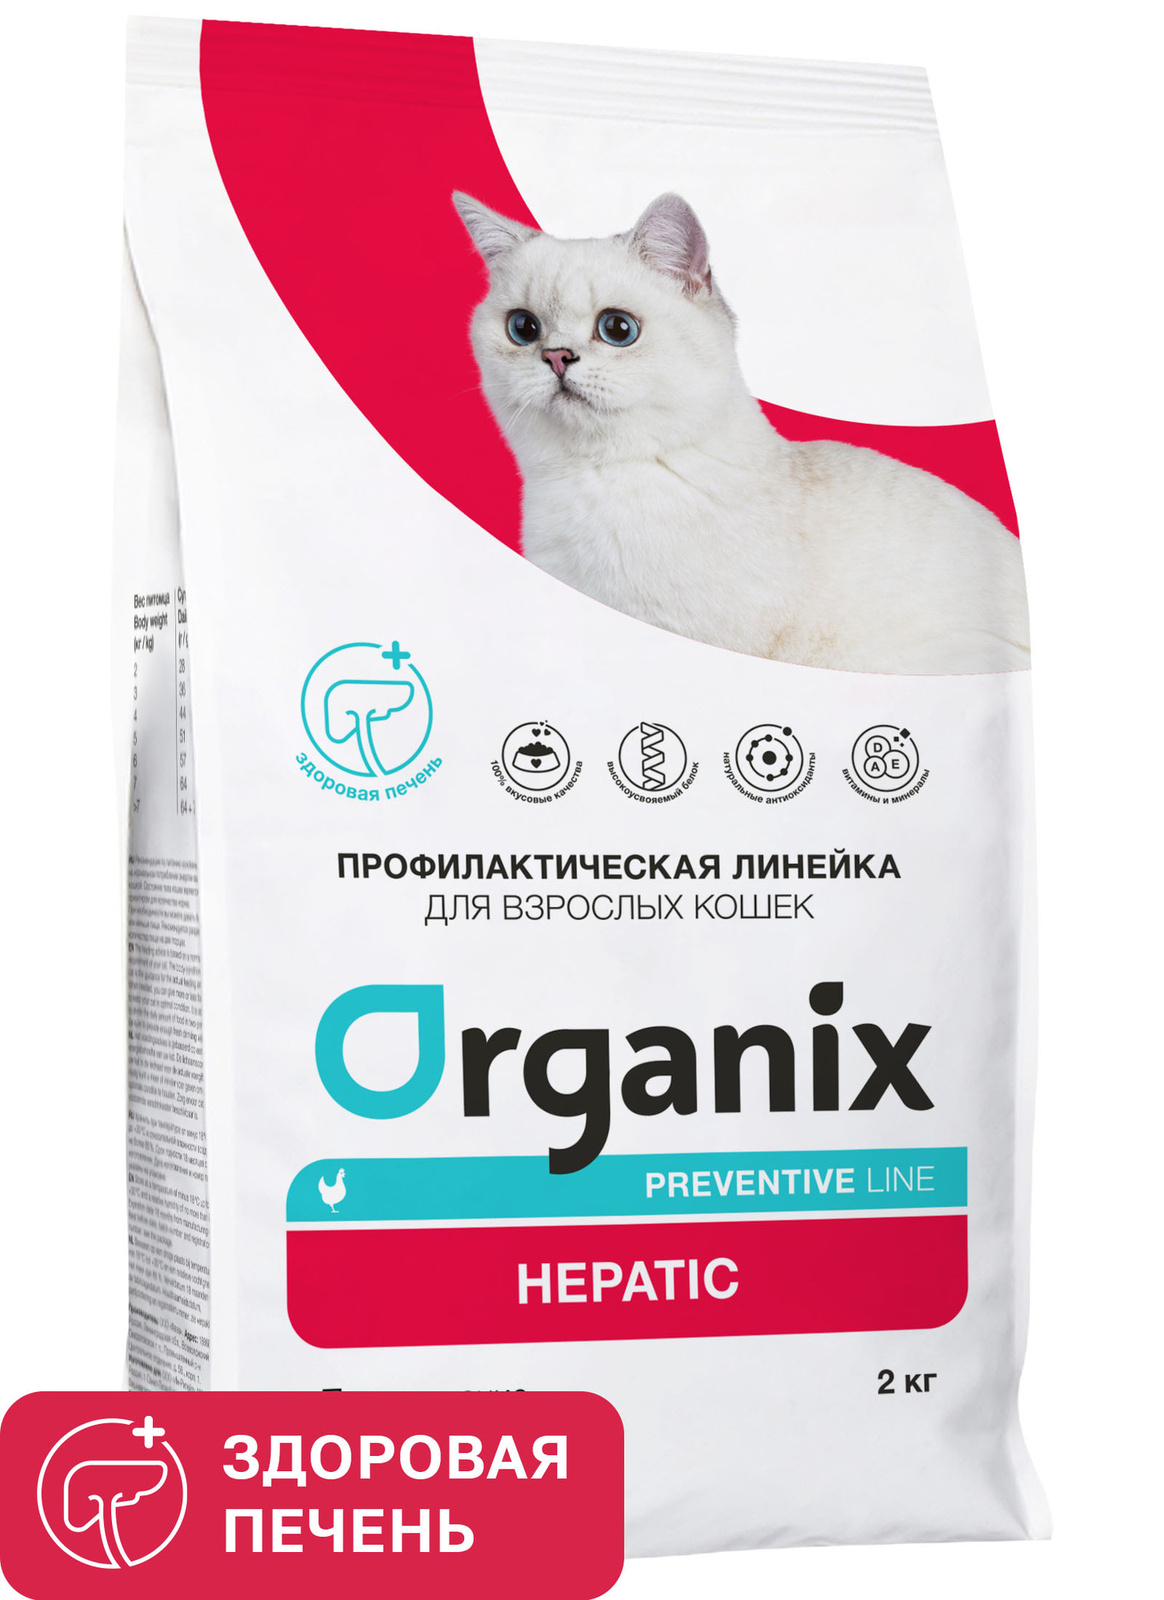 Organix Preventive Line Organix Preventive Line hepatic сухой корм для кошек Поддержание здоровья печени (600 г) organix organix сухой корм для кошек с курочкой 7 5 кг